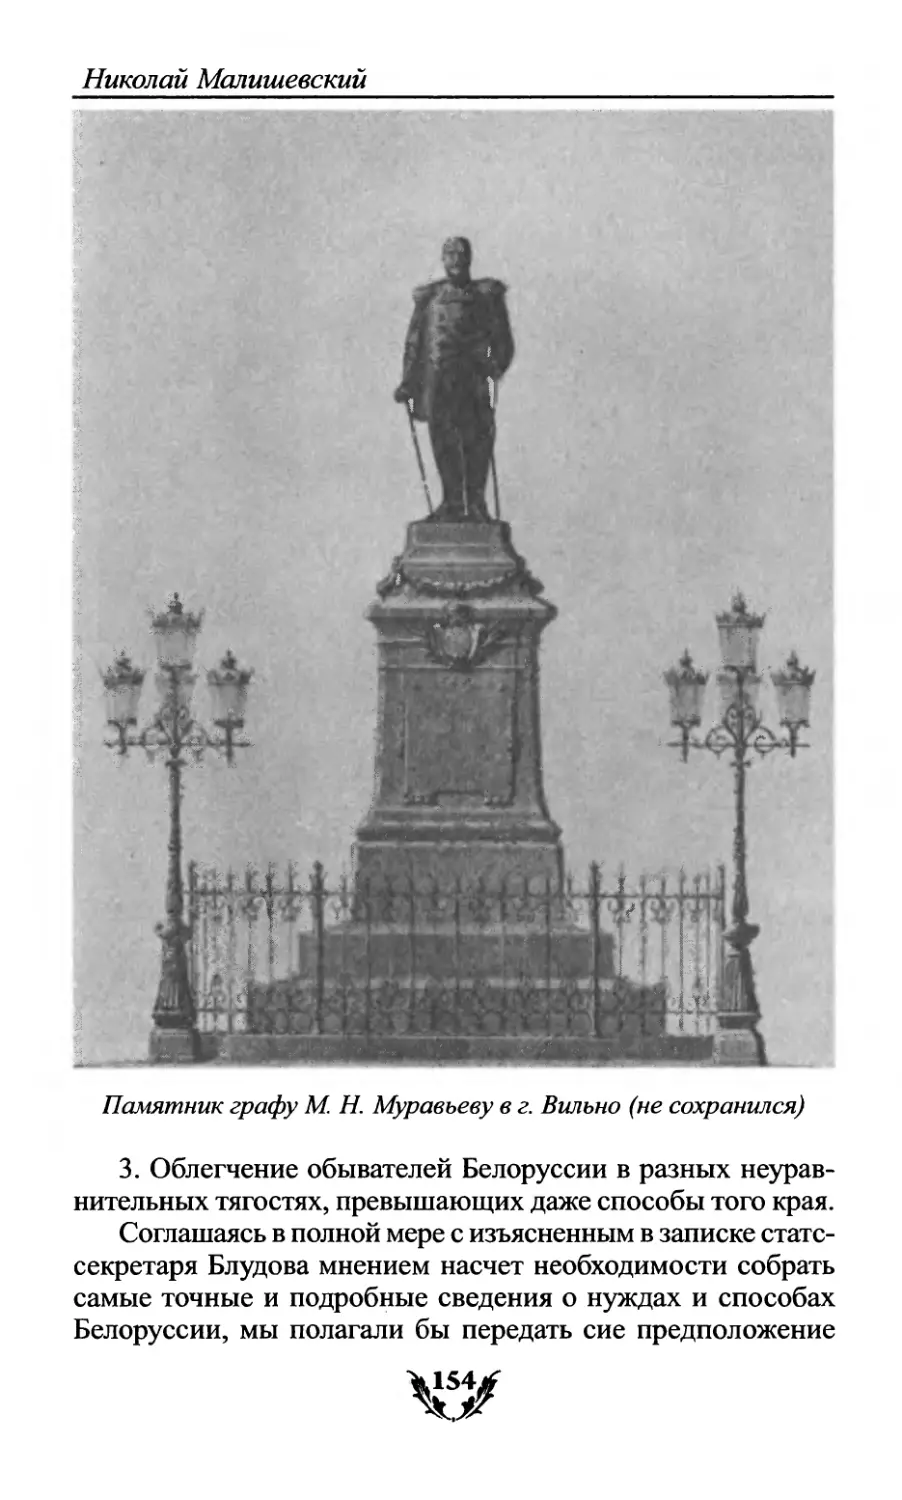 Памятник графу М.Н. Муравьеву в г. Вильно